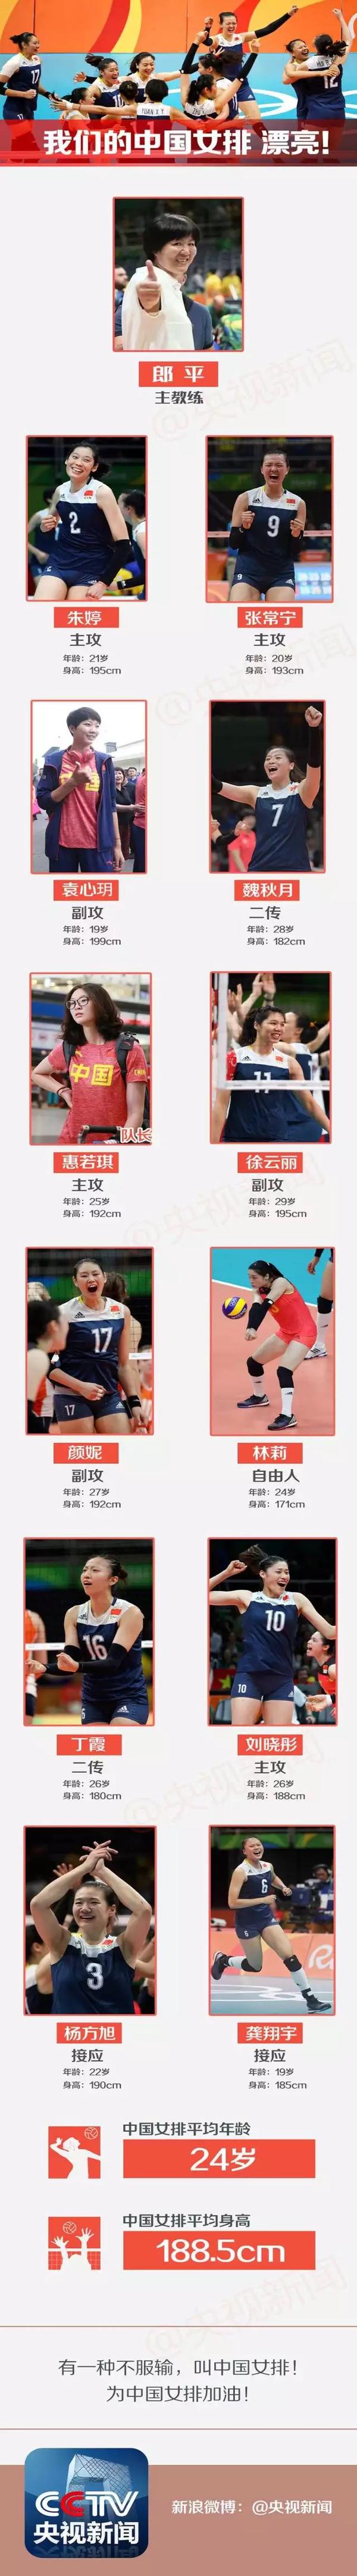 女排第二阶段赛程表中国_2018女排世界杯联赛中国赛程_2014世锦赛女排赛程第二阶段中国vs多米尼加